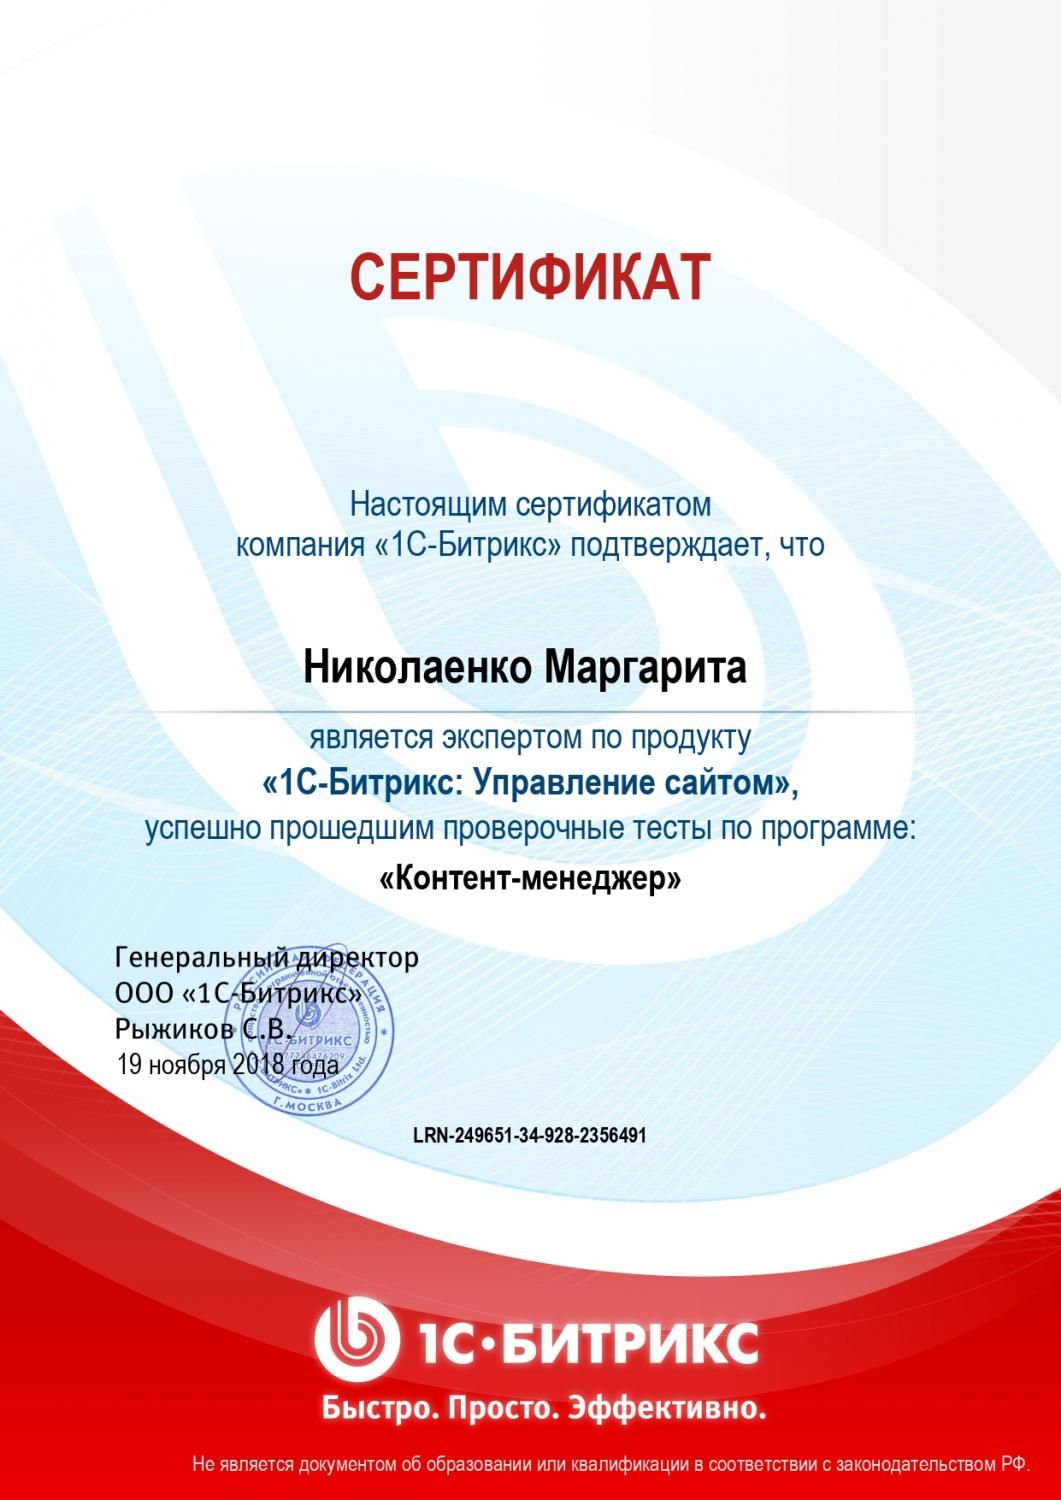 Сертификат эксперта по программе "Контент-менеджер" - Николаенко М. в Тюмени